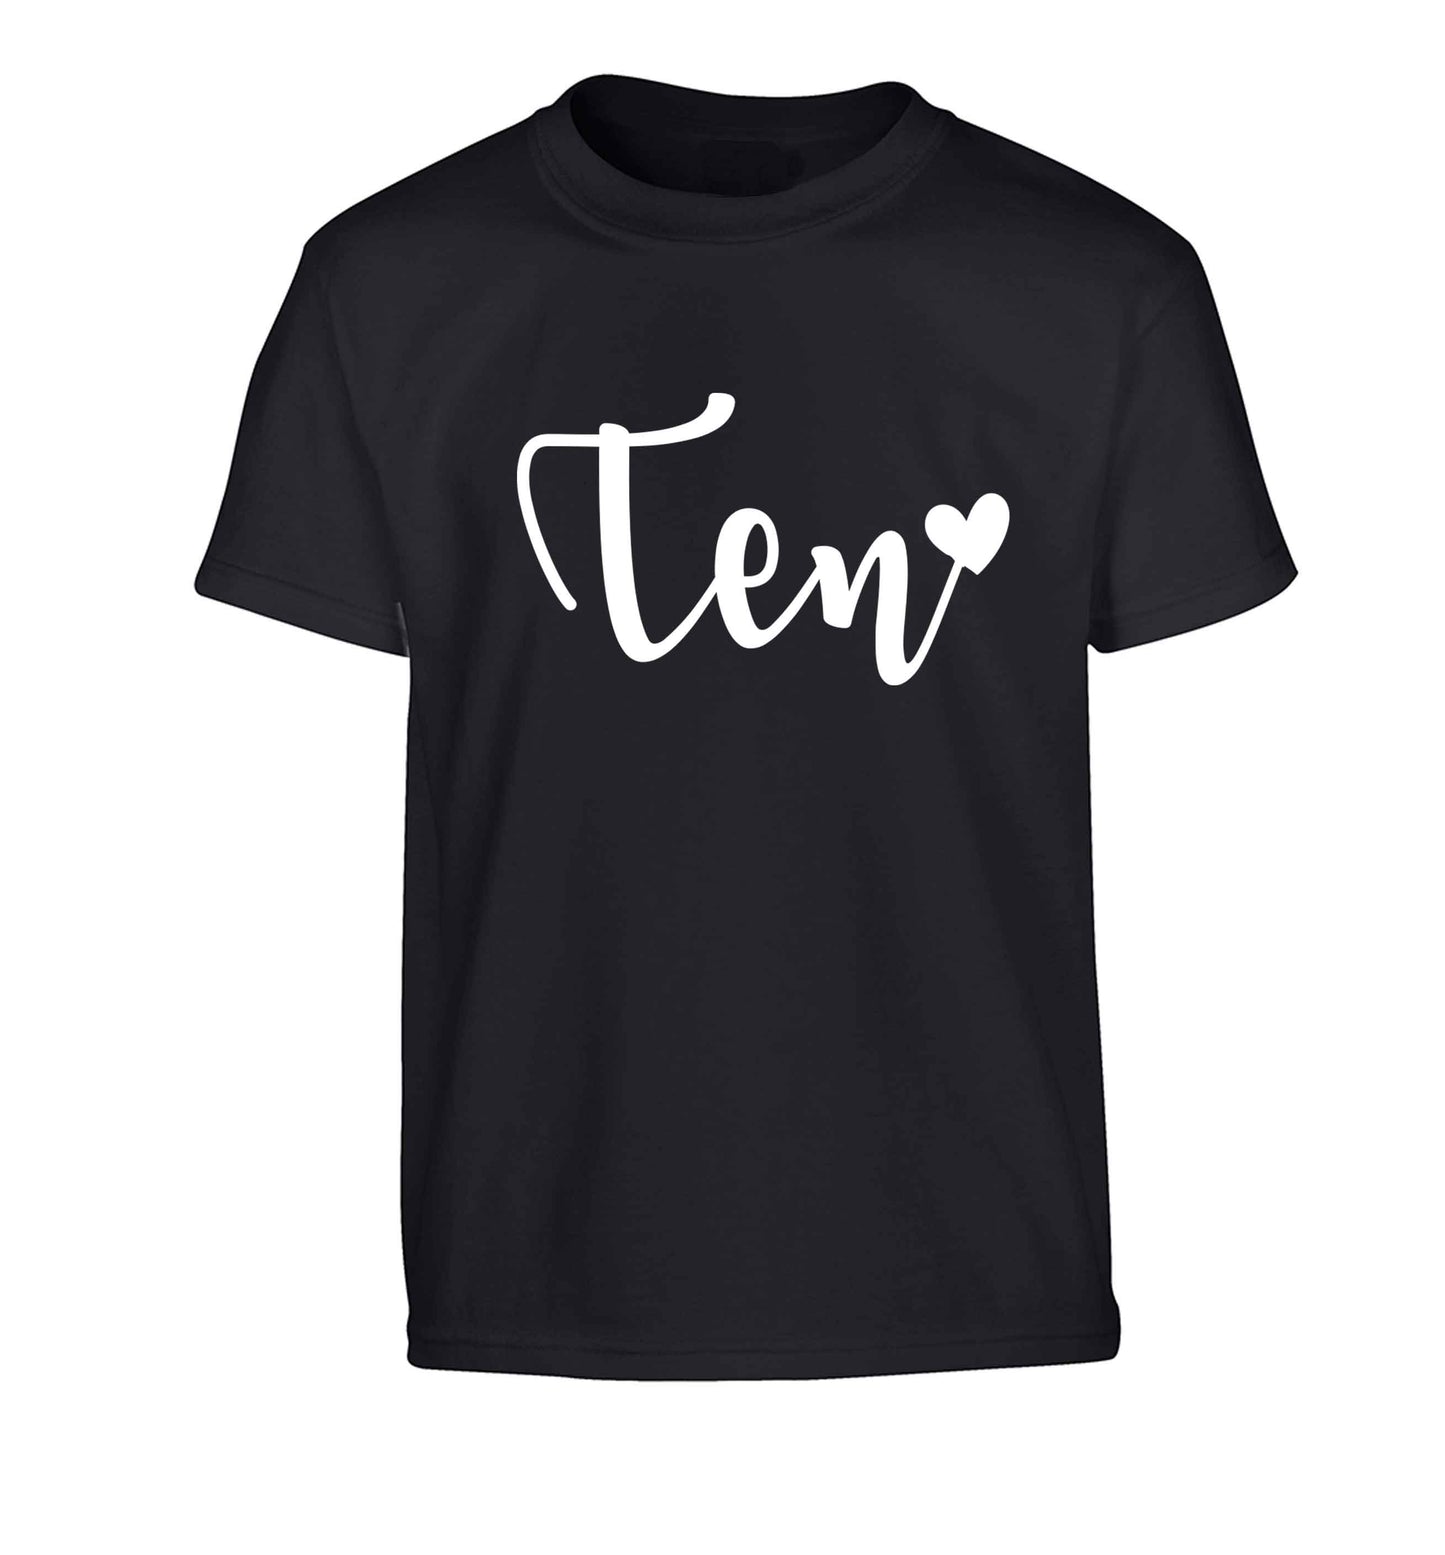 Ten and heart Children's black Tshirt 12-13 Years